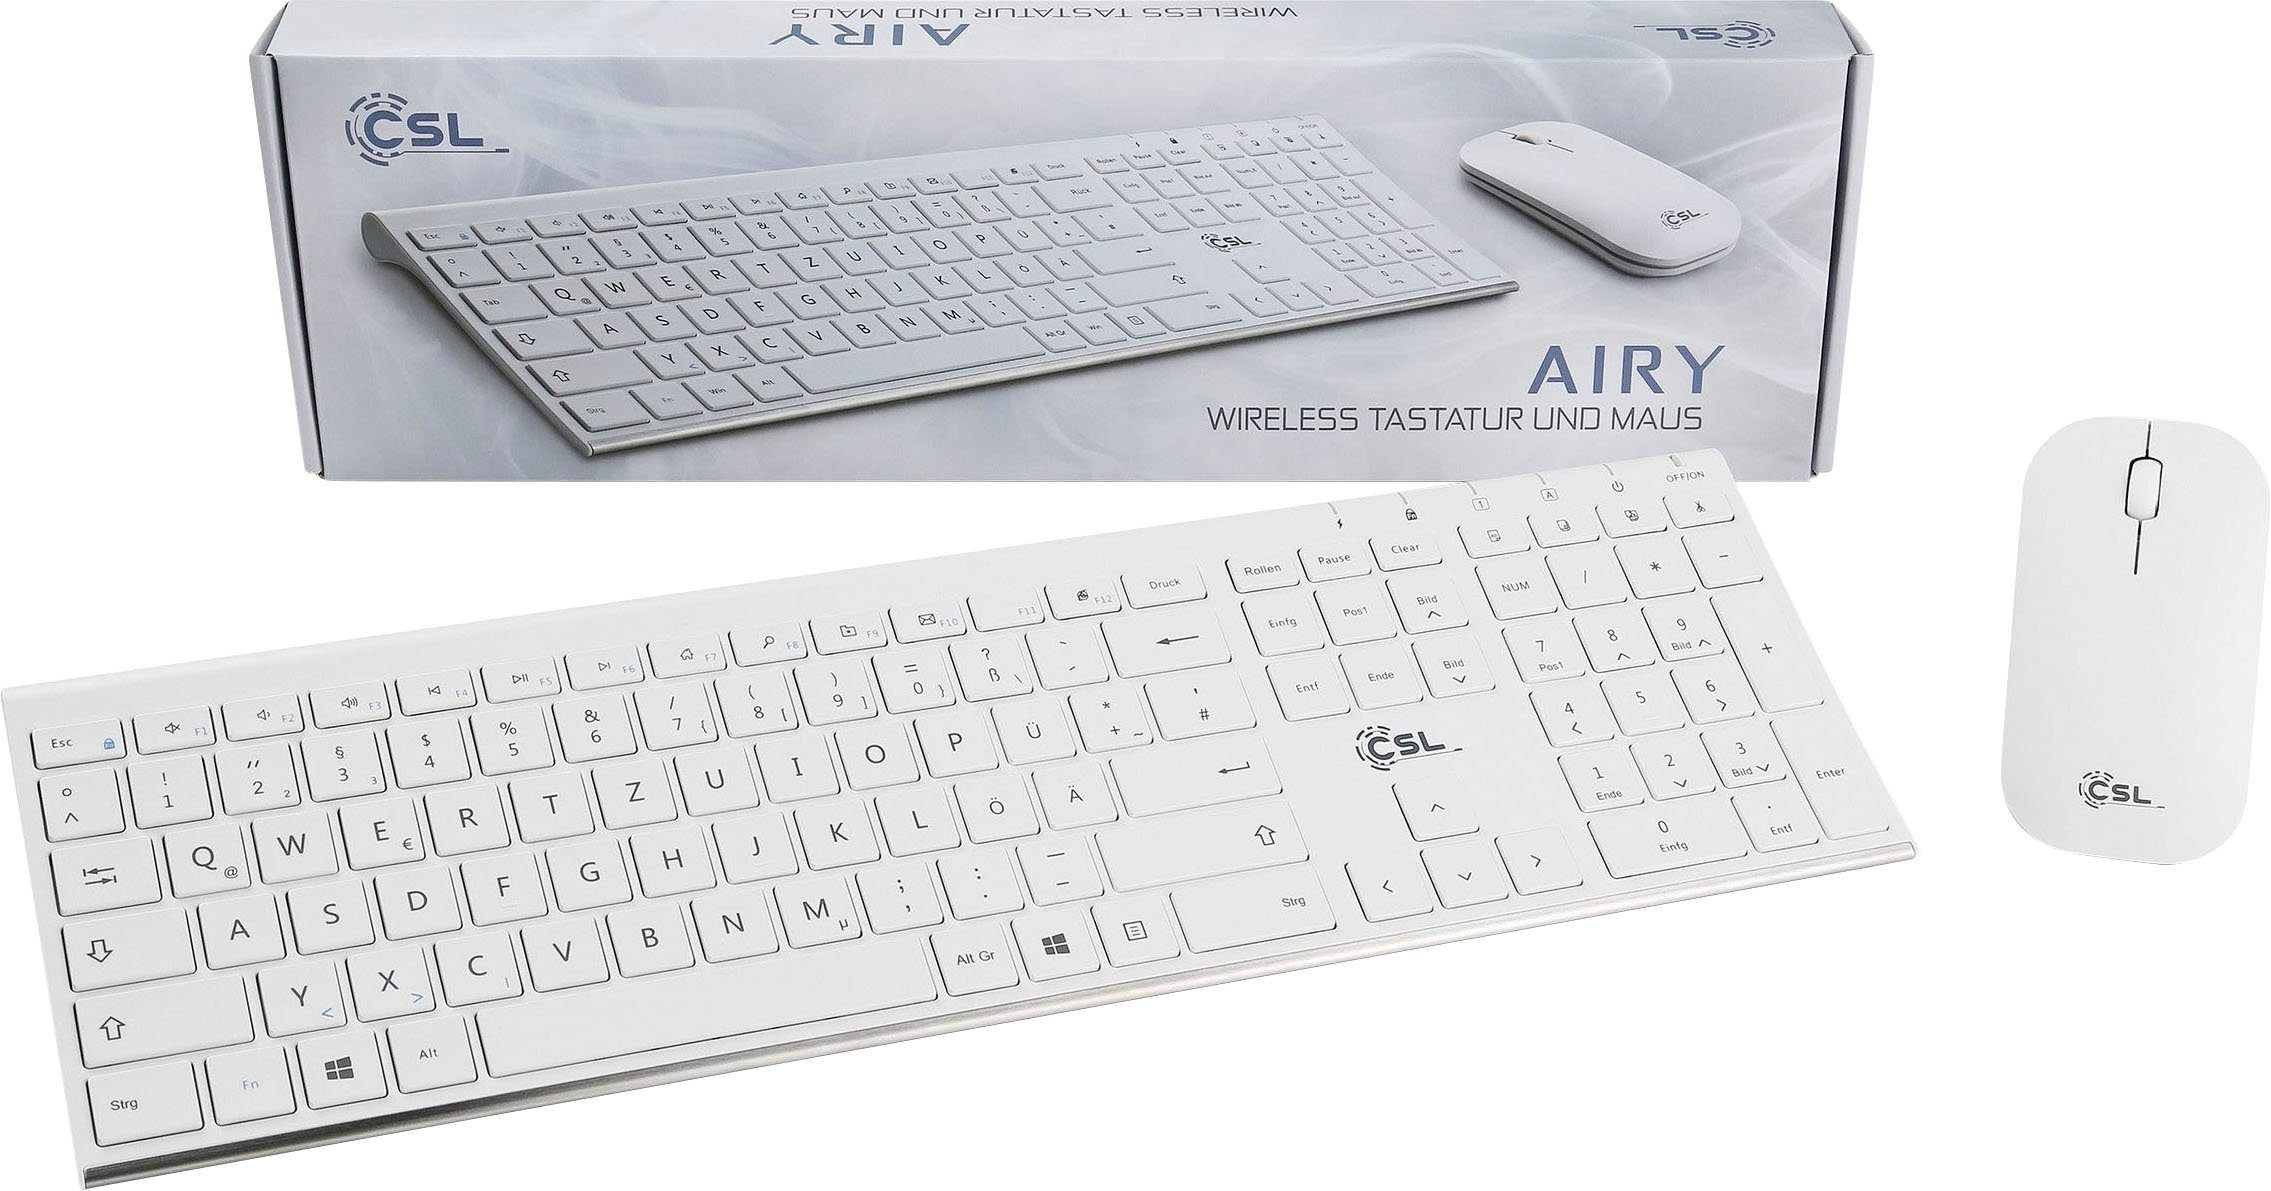 CSL Tastatur- Maus-Set und AIRY